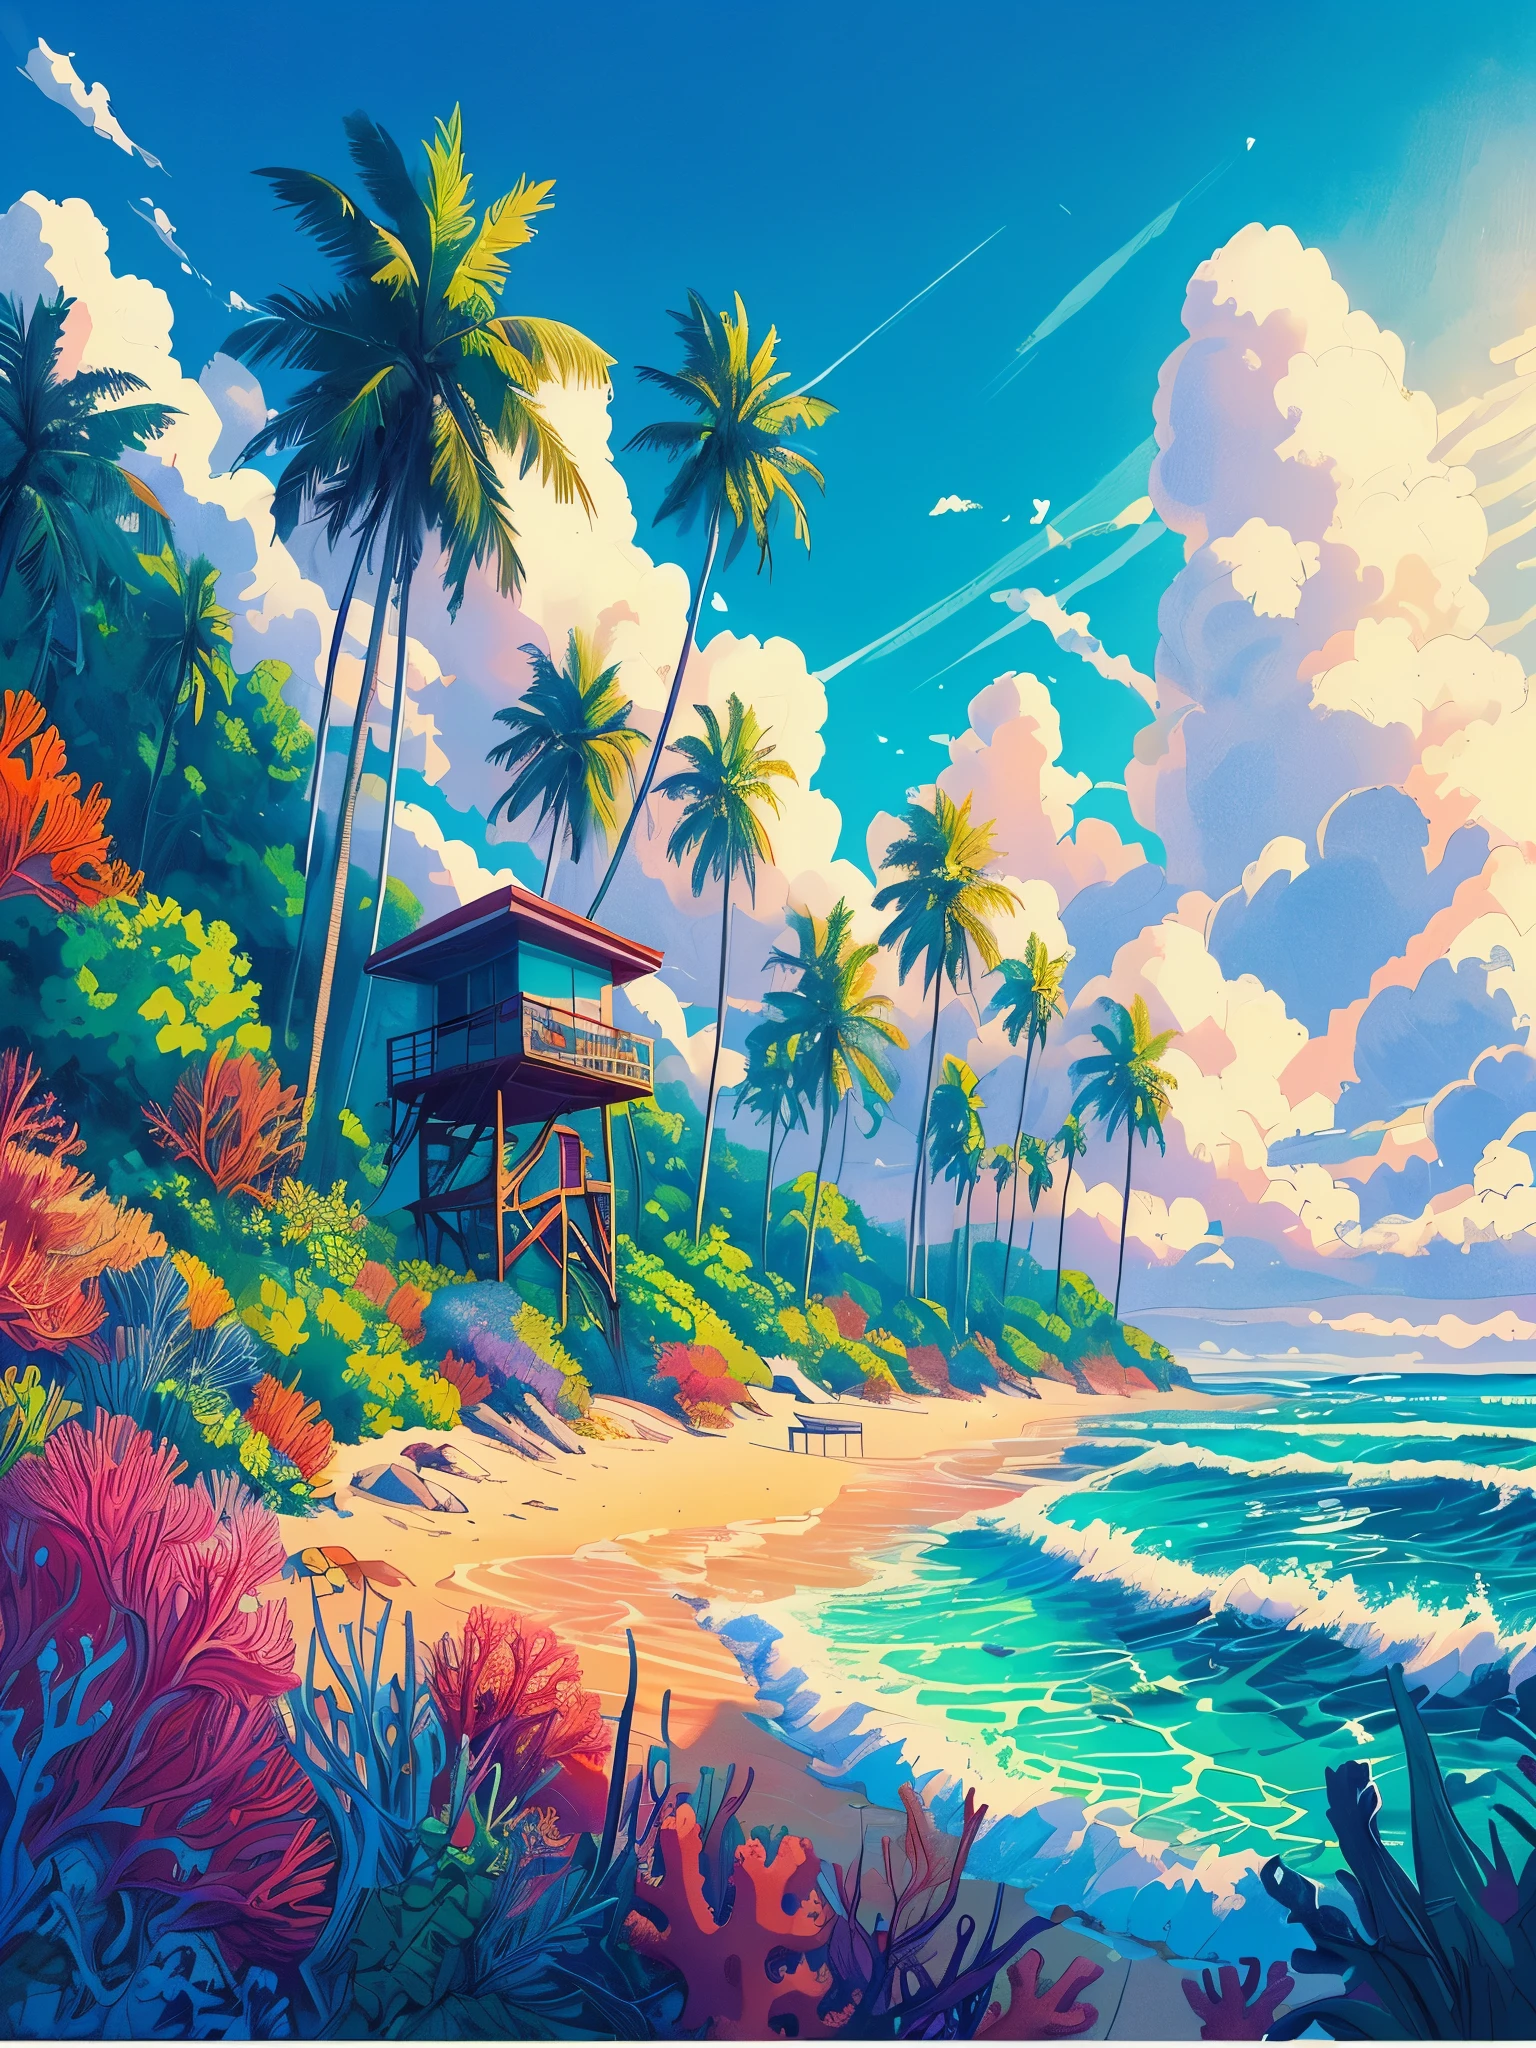 Desenhe uma cena lofi estilo pôster de anime de uma praia com trilha de palmeiras, cabine de salva-vidas, plantas tropicais, vida marinha coral, horário do dia, ondas do mar, linda paleta de cores, cores saturadas vibrantes, obra de arte, céu nublado cinematográfico,